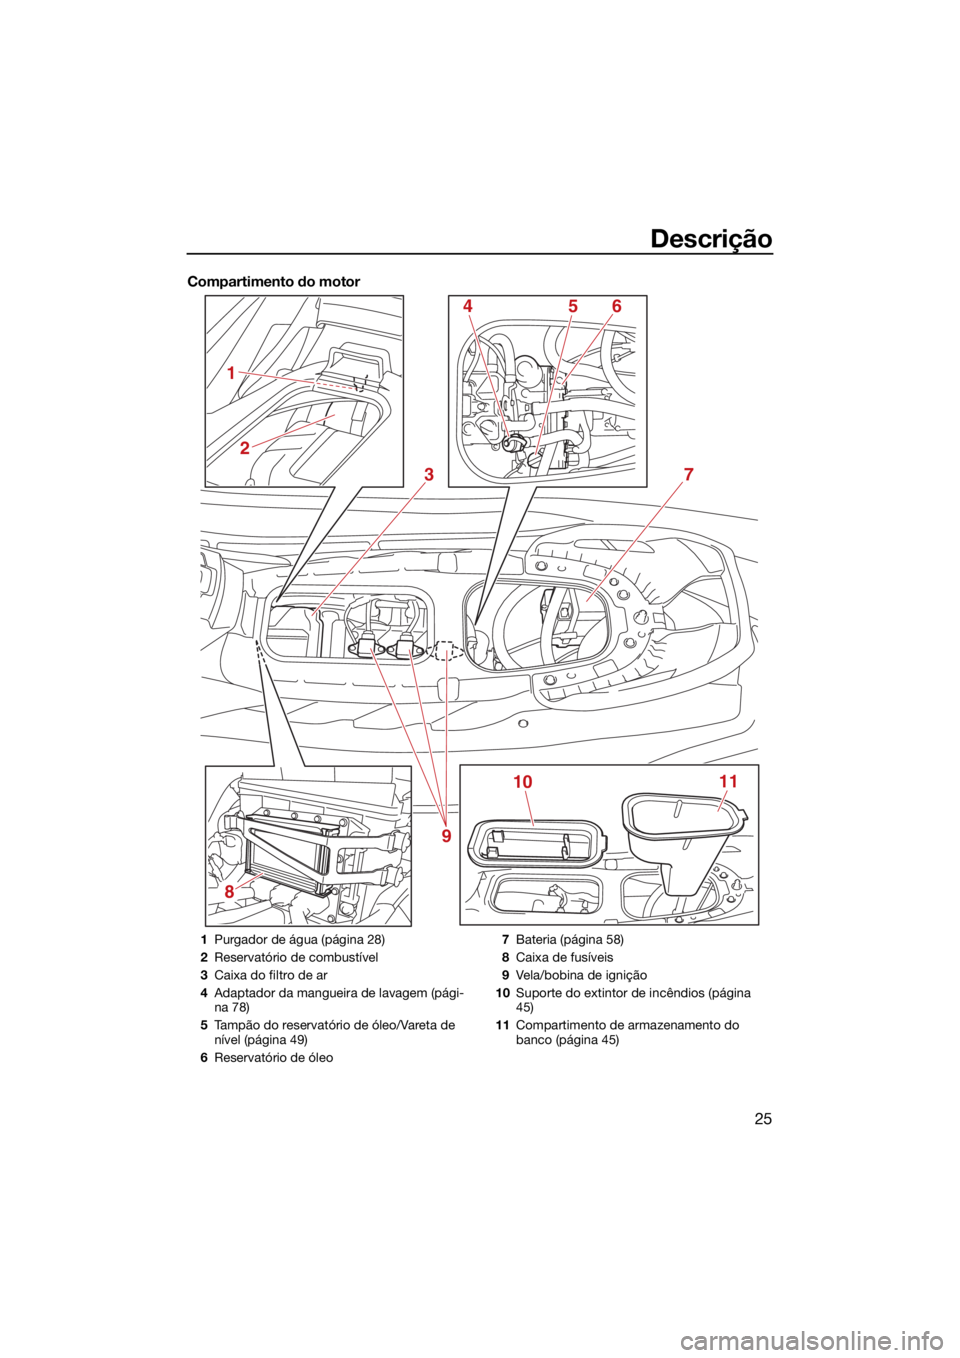 YAMAHA JETBLASTER 2022  Manual de utilização (in Portuguese) Descrição
25
Compartimento do motor
8
3
1011
4
2
1
56
7
9
1 Purgador de água (página 28)
2 Reservatório de combustível
3 Caixa do filtro de ar
4 Adaptador da mangueira de lavagem (pági-
na 78)
